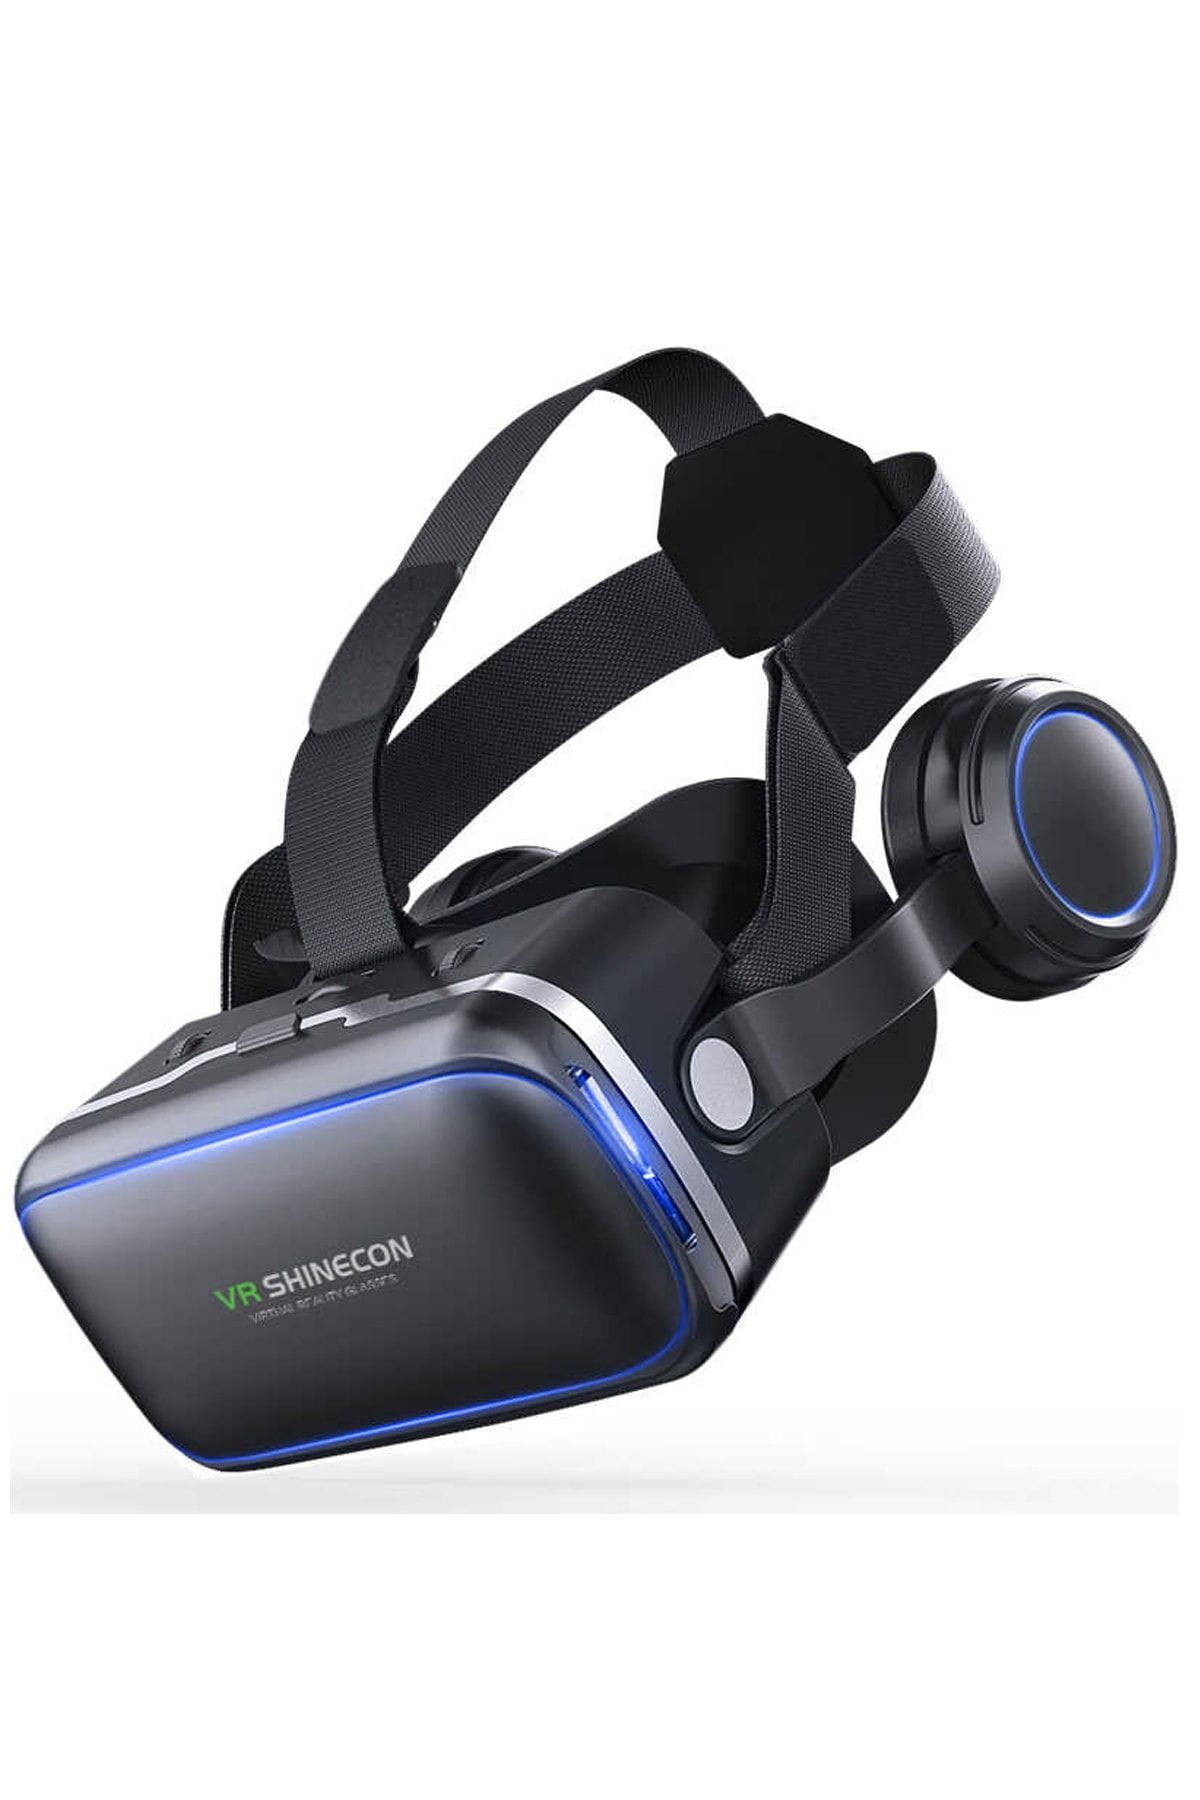 VR Shinecon Shinecon 3d Sanal Gerçeklik Gözlüğü 3.5-6.9 Inç